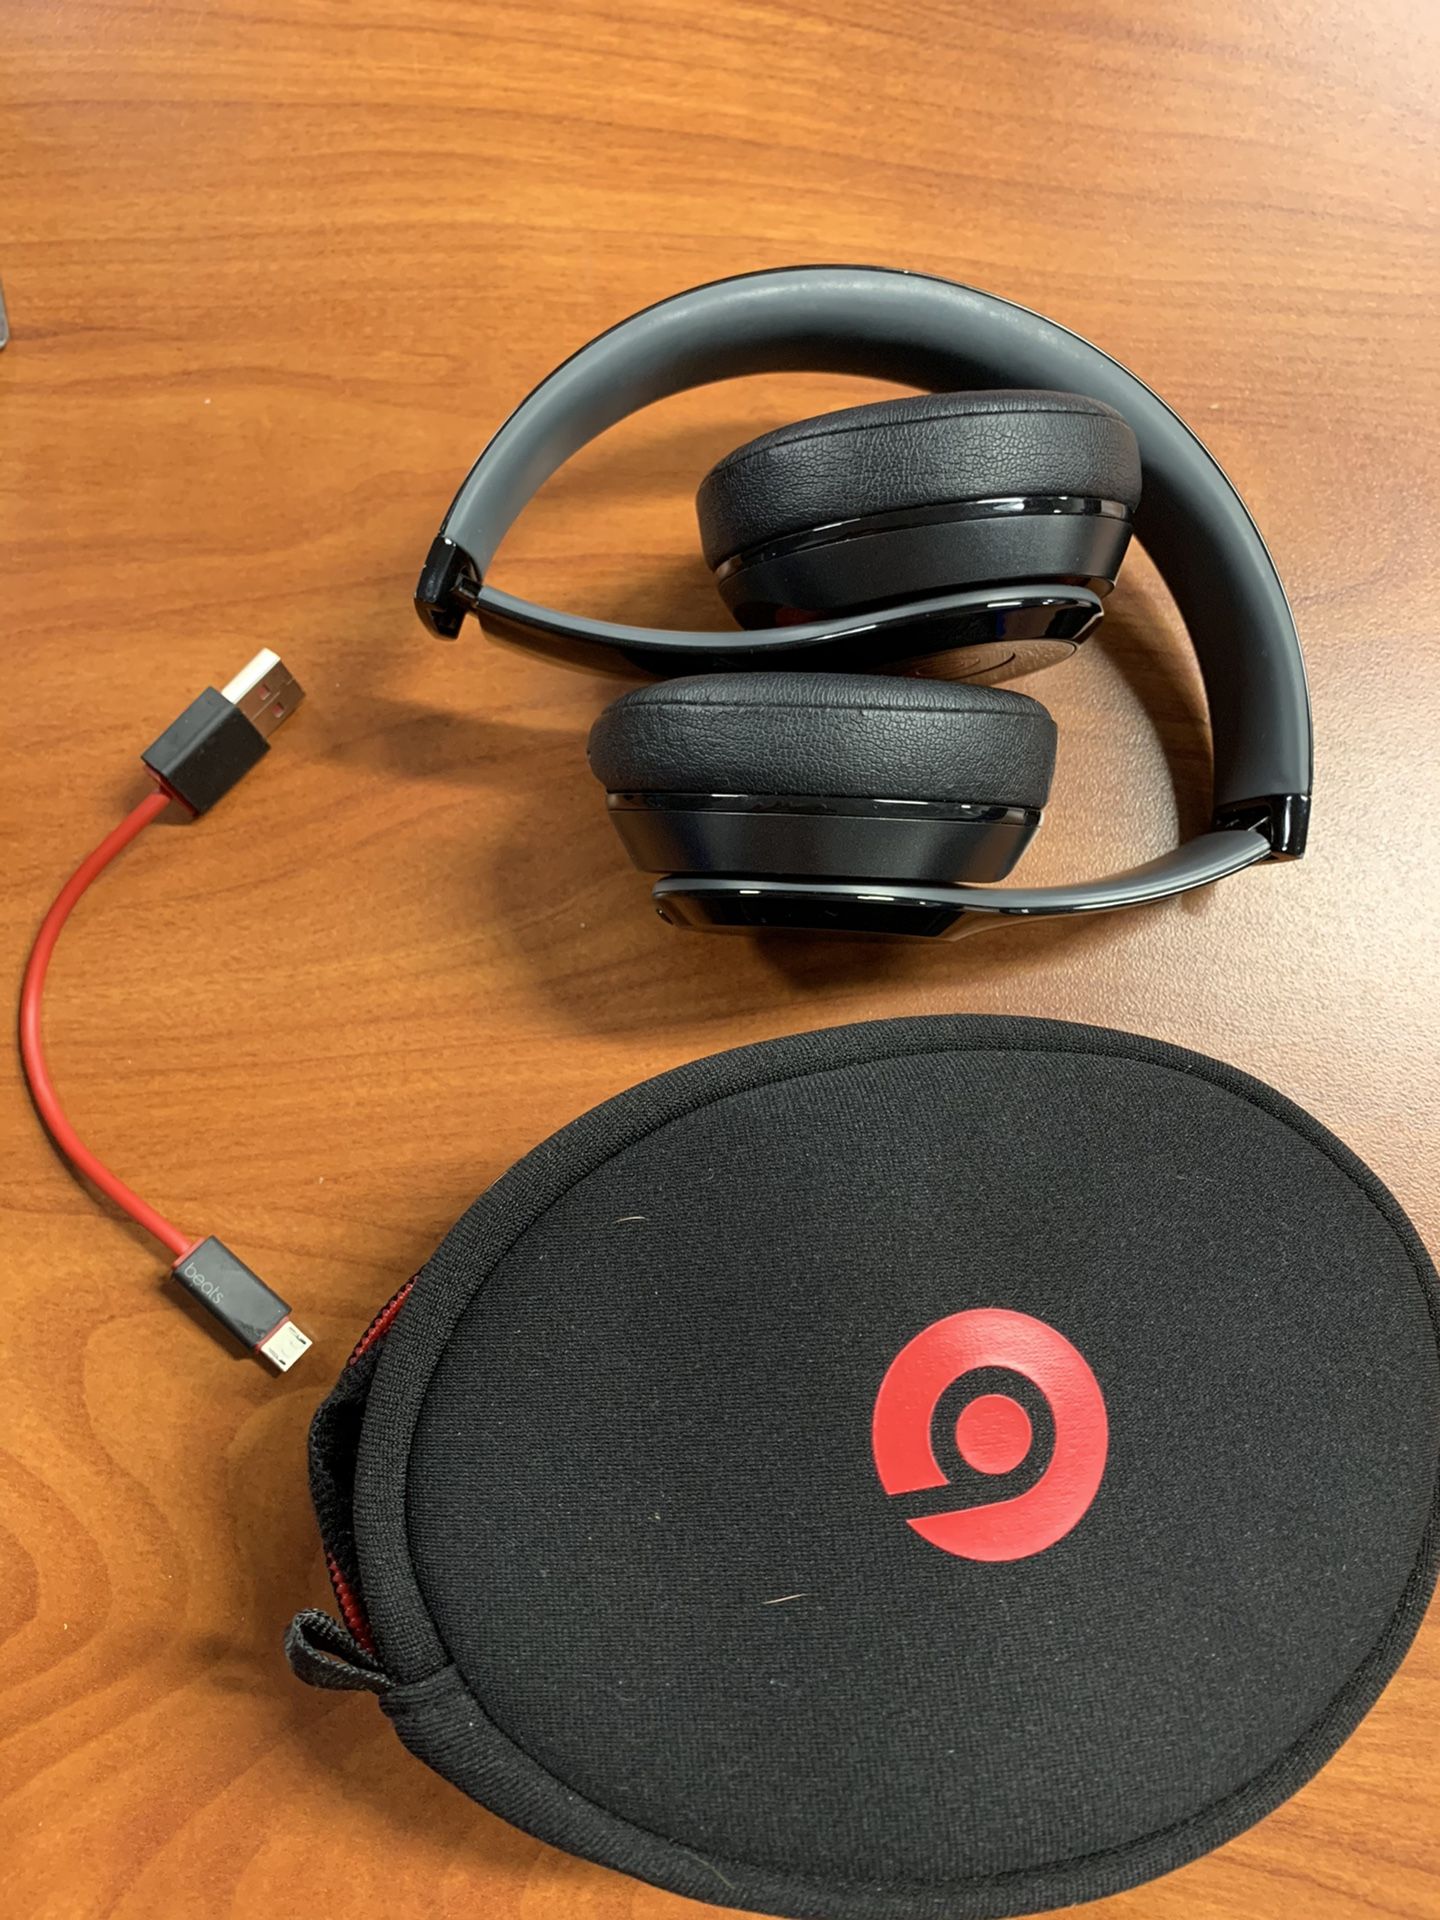 Wireless Beats Headphones by Dre